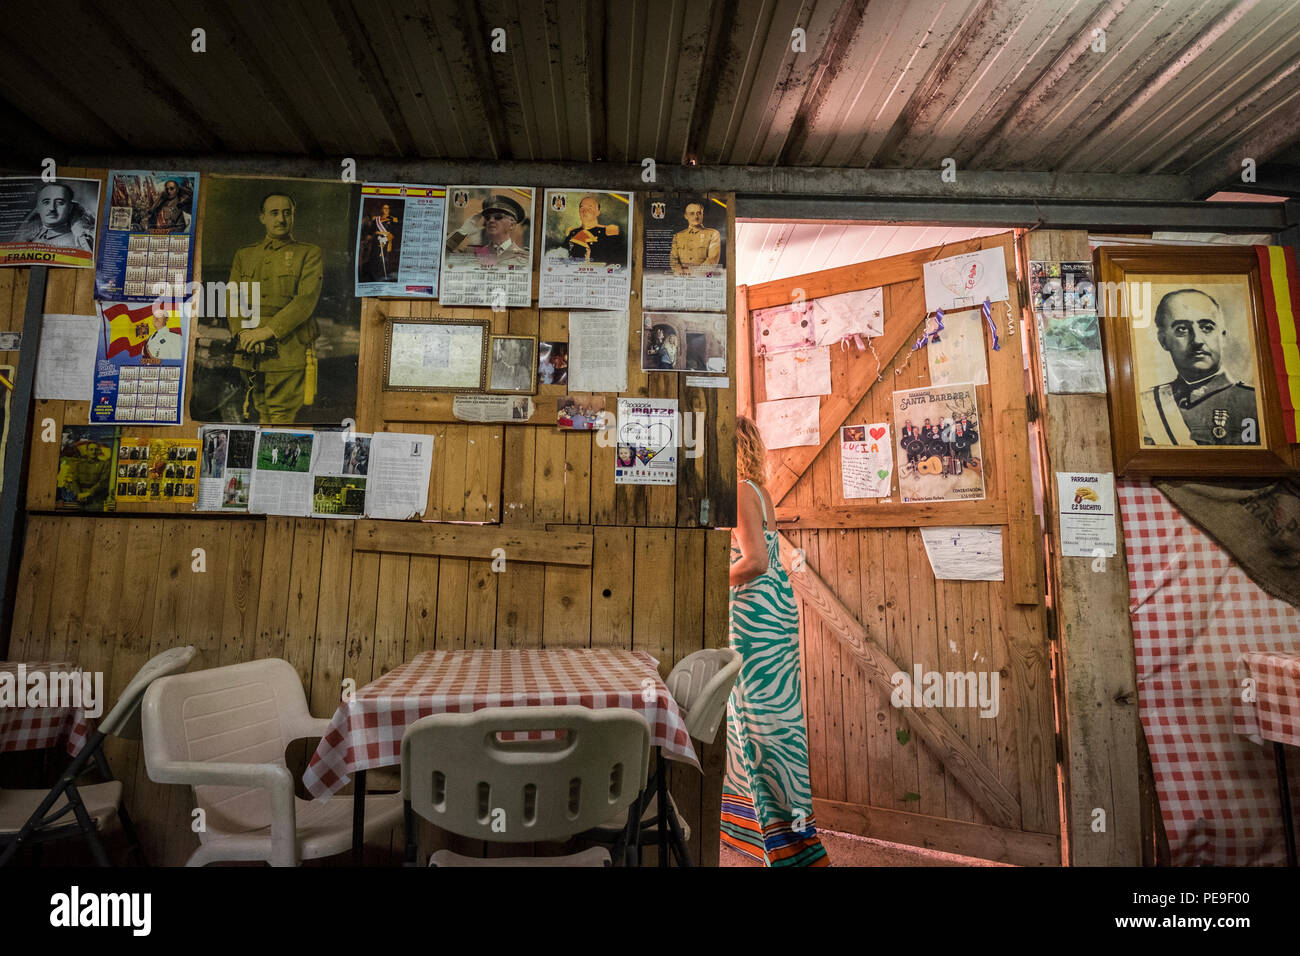 Parete di un Guachinche bar, ristorante, decorato con Franco paraphanelia, fotografie e calendari, Valle Grande, Anaga, Tenerife, Isole Canarie Foto Stock